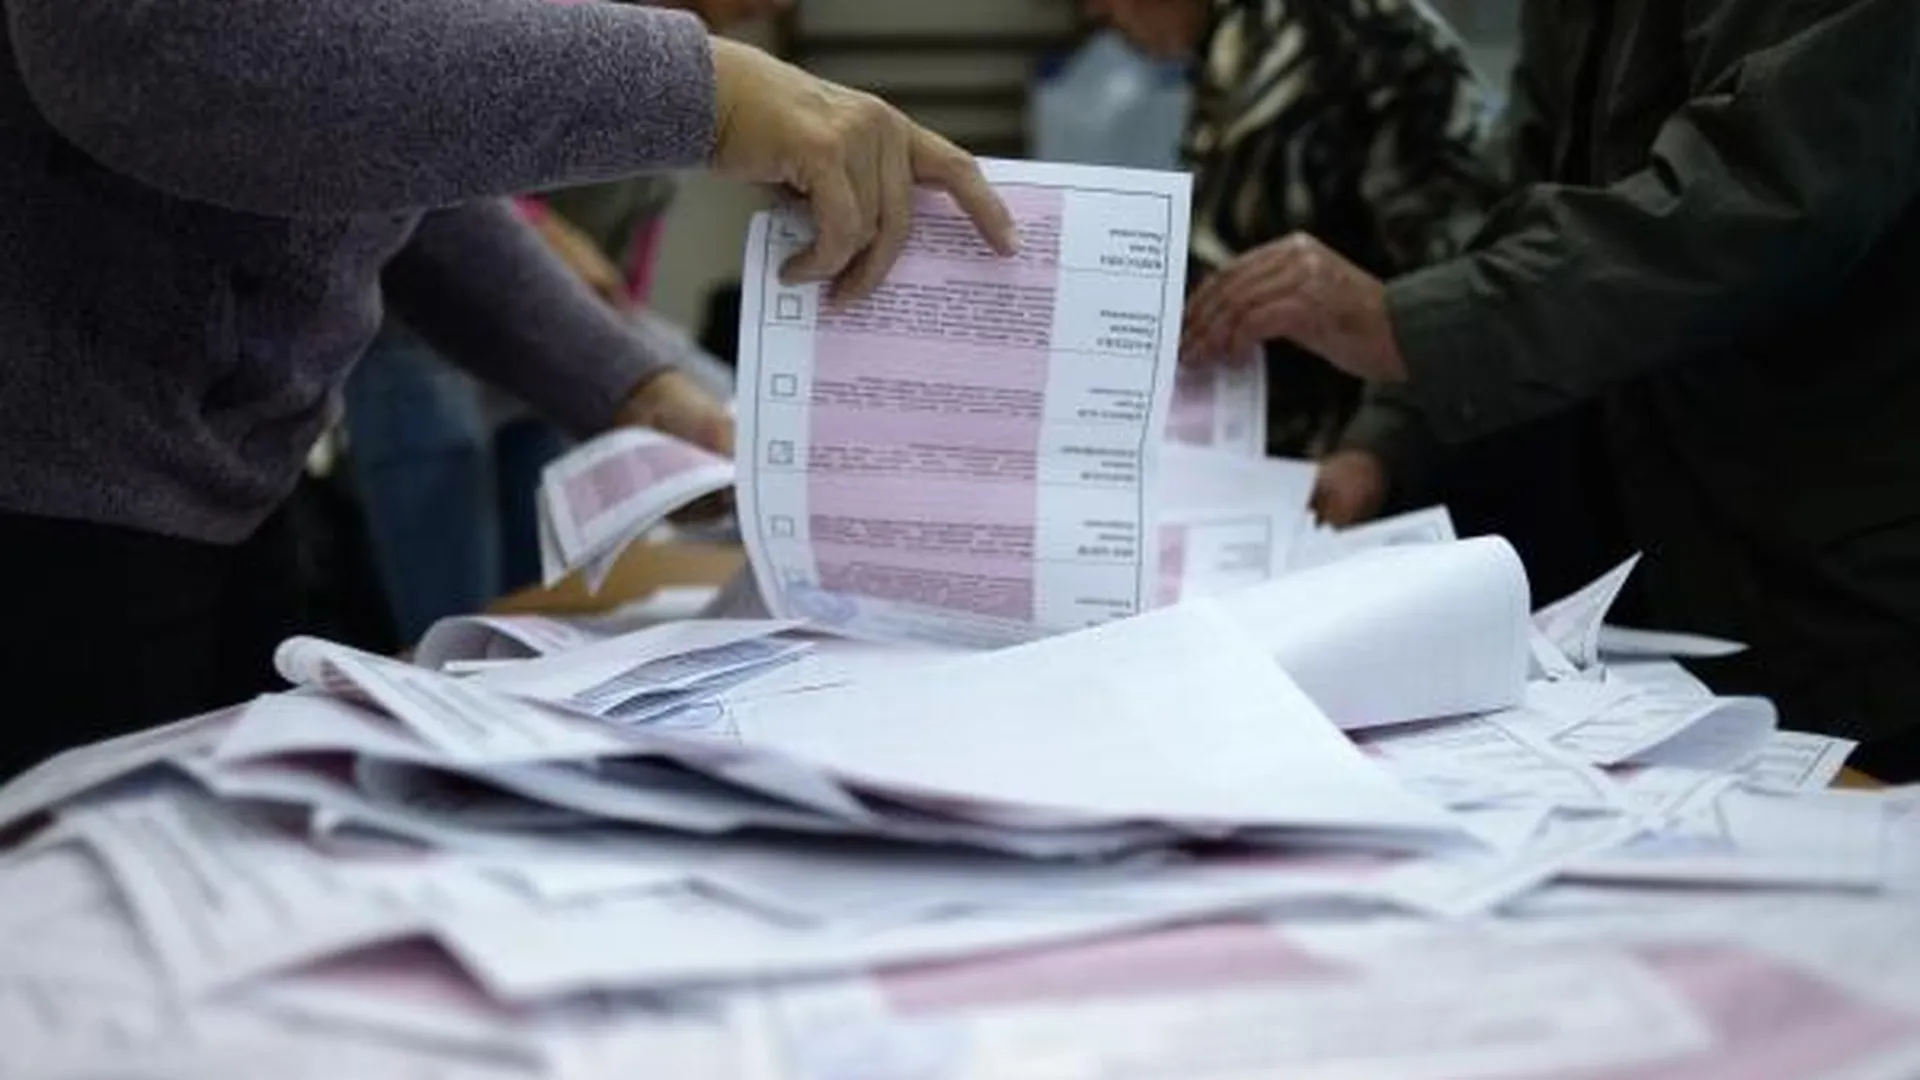 Боробов: на участках в Подмосковье проголосовали уже по 600-700 человек